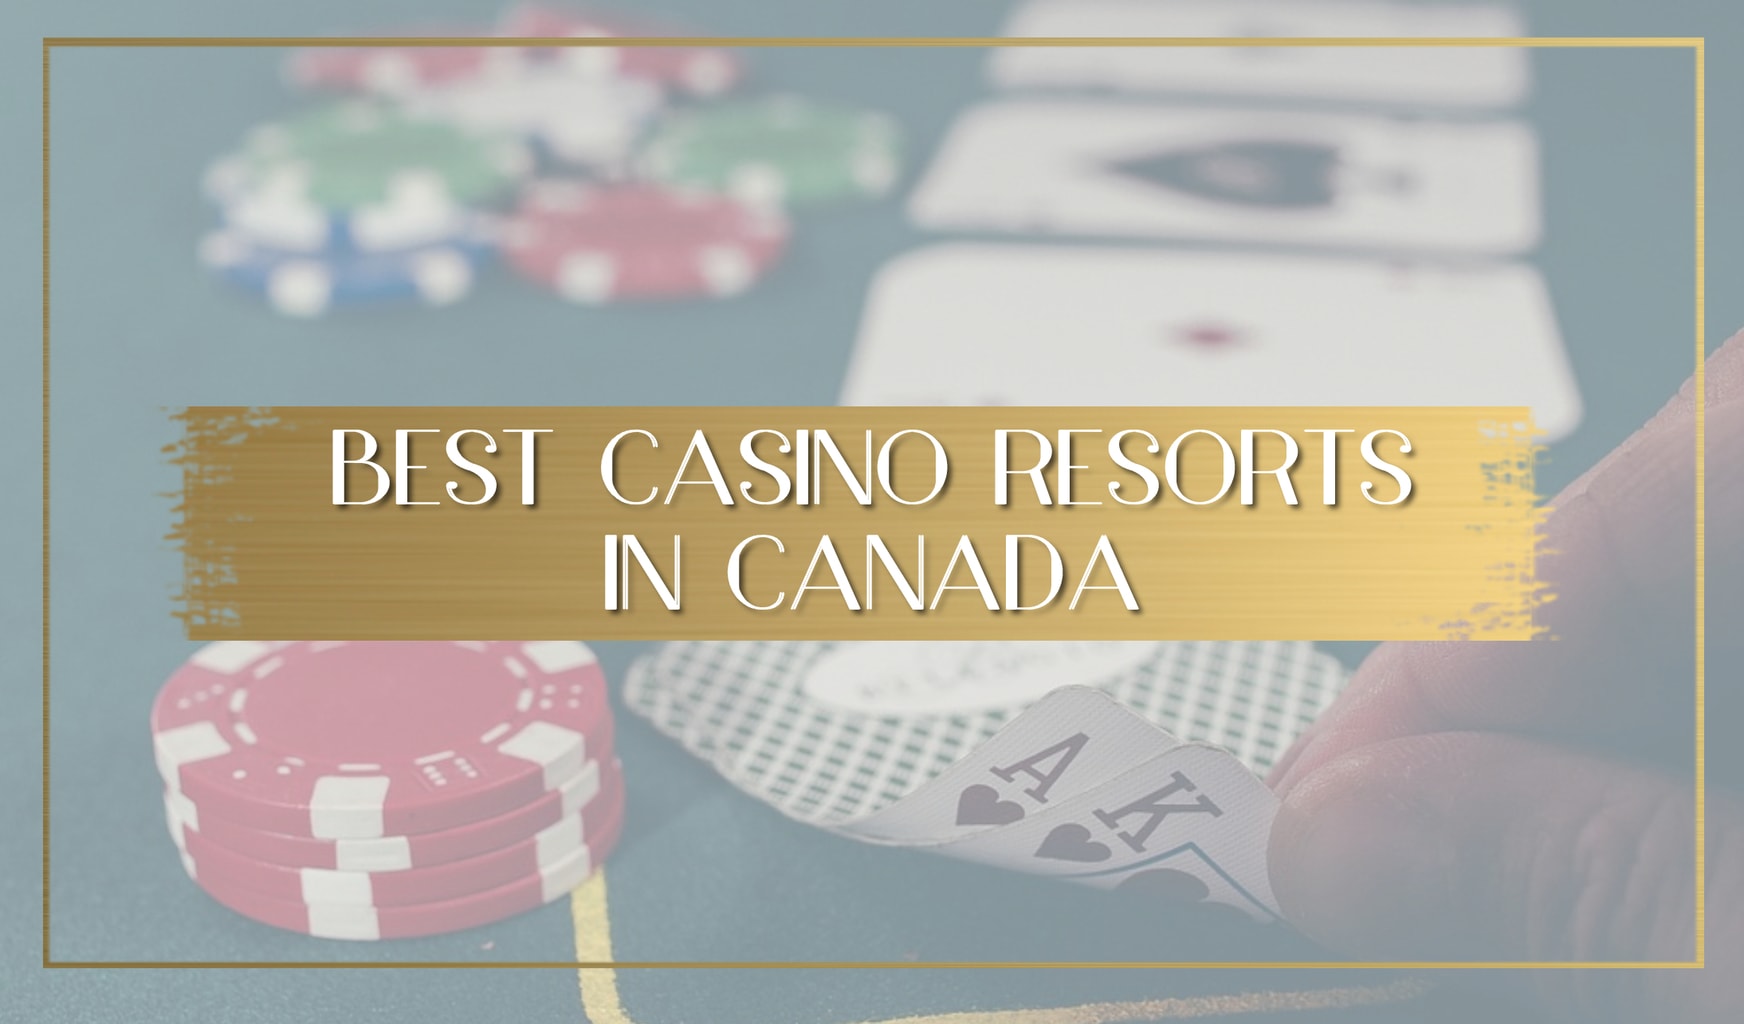 Best Casino Resorts in Canada main